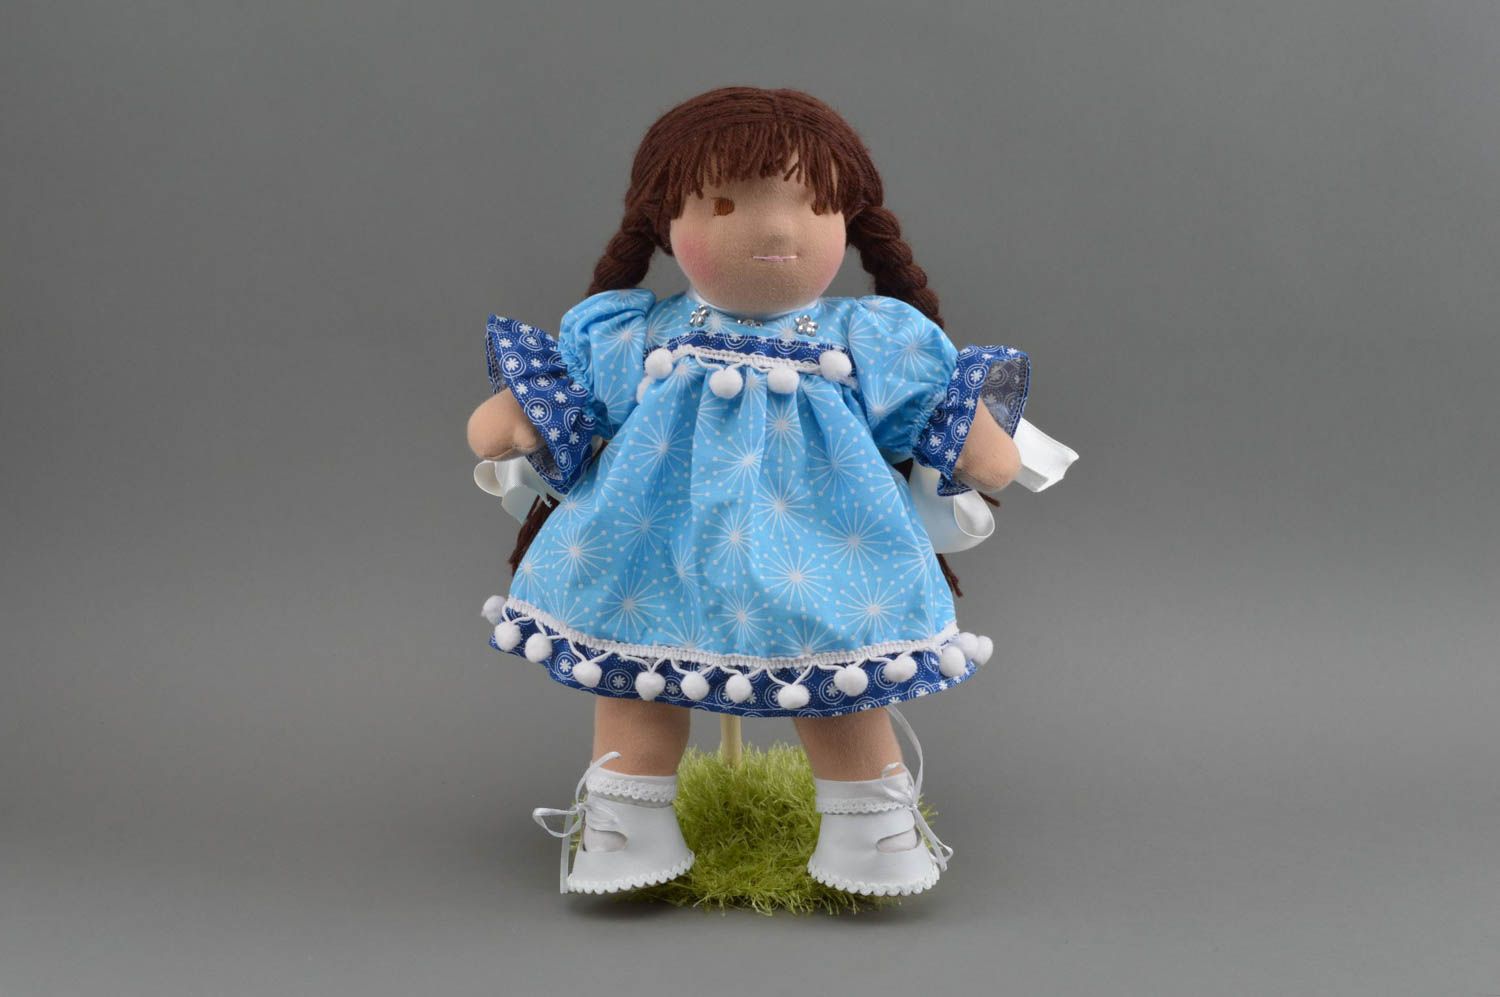 Красивое платье для куклы из хлопка синего цвета с кружевом пошитое вручную  фото 1